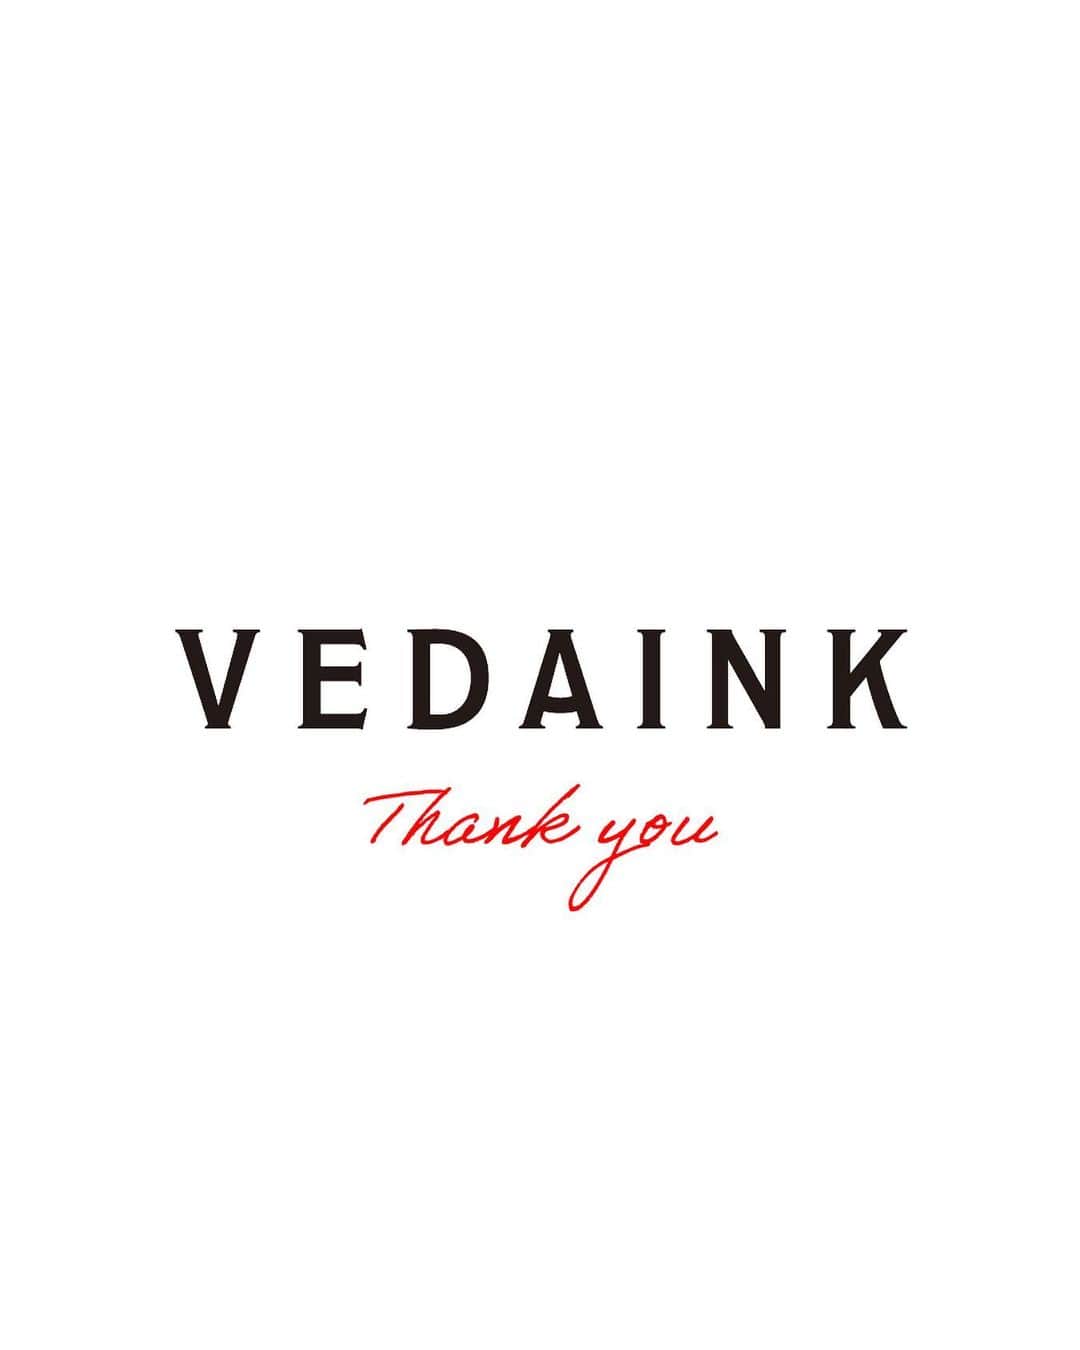 VEDAINK （ヴェーダインク）のインスタグラム：「【閉店のお知らせ】  いつも当店をご愛顧いただき、誠にありがとうございます。  VEDAINKは2017年の創業以来、皆様方にご愛顧いただいて参りましたが、 諸事情により9月29日を持ちまして完全閉店する運びとなりました。  6年にわたるご厚情に心から感謝申し上げます。 また、突然の閉店でご迷惑をおかけしますことを深くお詫び申し上げます。  VEDAINKは【障がい者雇用の促進とCSRの取り組み】をコンセプトに、 大阪市大国町で路面プリントファクトリーとして2017年にスタートしました。  働くことに生きがい/やりがいを感じ、共に「ものづくり」を楽しみながら 高品質なサービスをお客様にお届けできればと日々運営してまいりました。  2020年には工場規模の拡大も伴い、 現在のプリントファクトリーである大阪市中之島に拠点を移します。  そこからイベント、ワークショップ出店、 コラボ/チャリティー企画など様々なアクションをしてまいりました。  新たなお客様/お取引様との出会いや、新たな経験も沢山させていただきました。  今後はこれまでに経験したことを糧として、 本来のコンセプト/原点である【障がい者雇用の促進とCSRの取り組み】強化と、 さらなる環境整備をする為に、新たな形でDE/I, CSRの取り組み/活動を続けてまいります。  皆様からいただいた貴重な経験と出会いをこれからの未来への貢献に生かし、 楽しく長くやりがいを感じながら働くことができるような、 平等で多様性ある社会作りのピースになれるよう次のステージへと向かいます。  VEDAINKがこれまで運営出来ていたこと、 そして次のステージに向かえることは、 これもひとえに皆様のご支援の賜物です。  VEDAINKを応援してくれた方 ブランドを愛してくれた方 お取引企業/連携業者の皆様、  VEDAINKは形を変え、新たな未来へ旅立ちます。 公平、平等で多様性のある未来でまた再会しましょう。  本当にありがとうございました。  VEDAINK　メンバー一同」